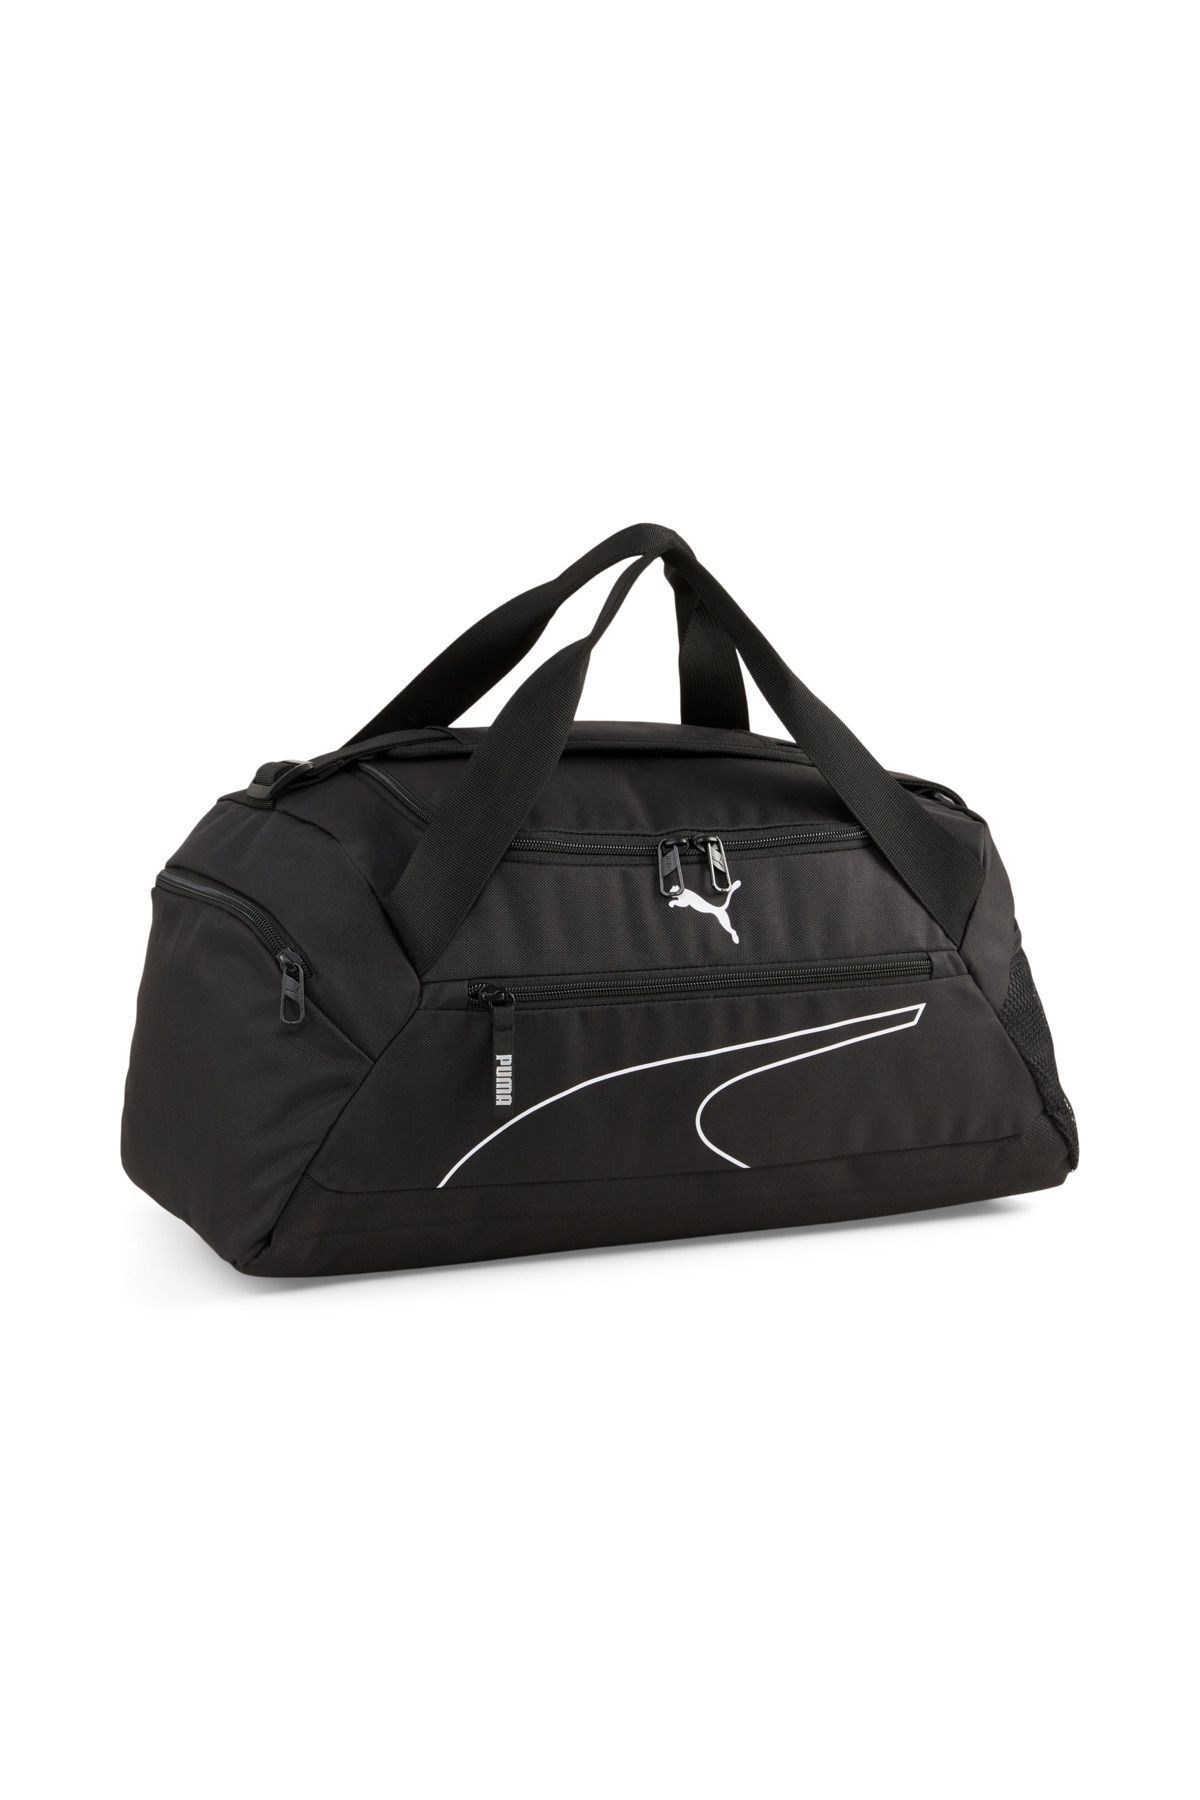 Puma Fundamentals Sports Bag S09033101